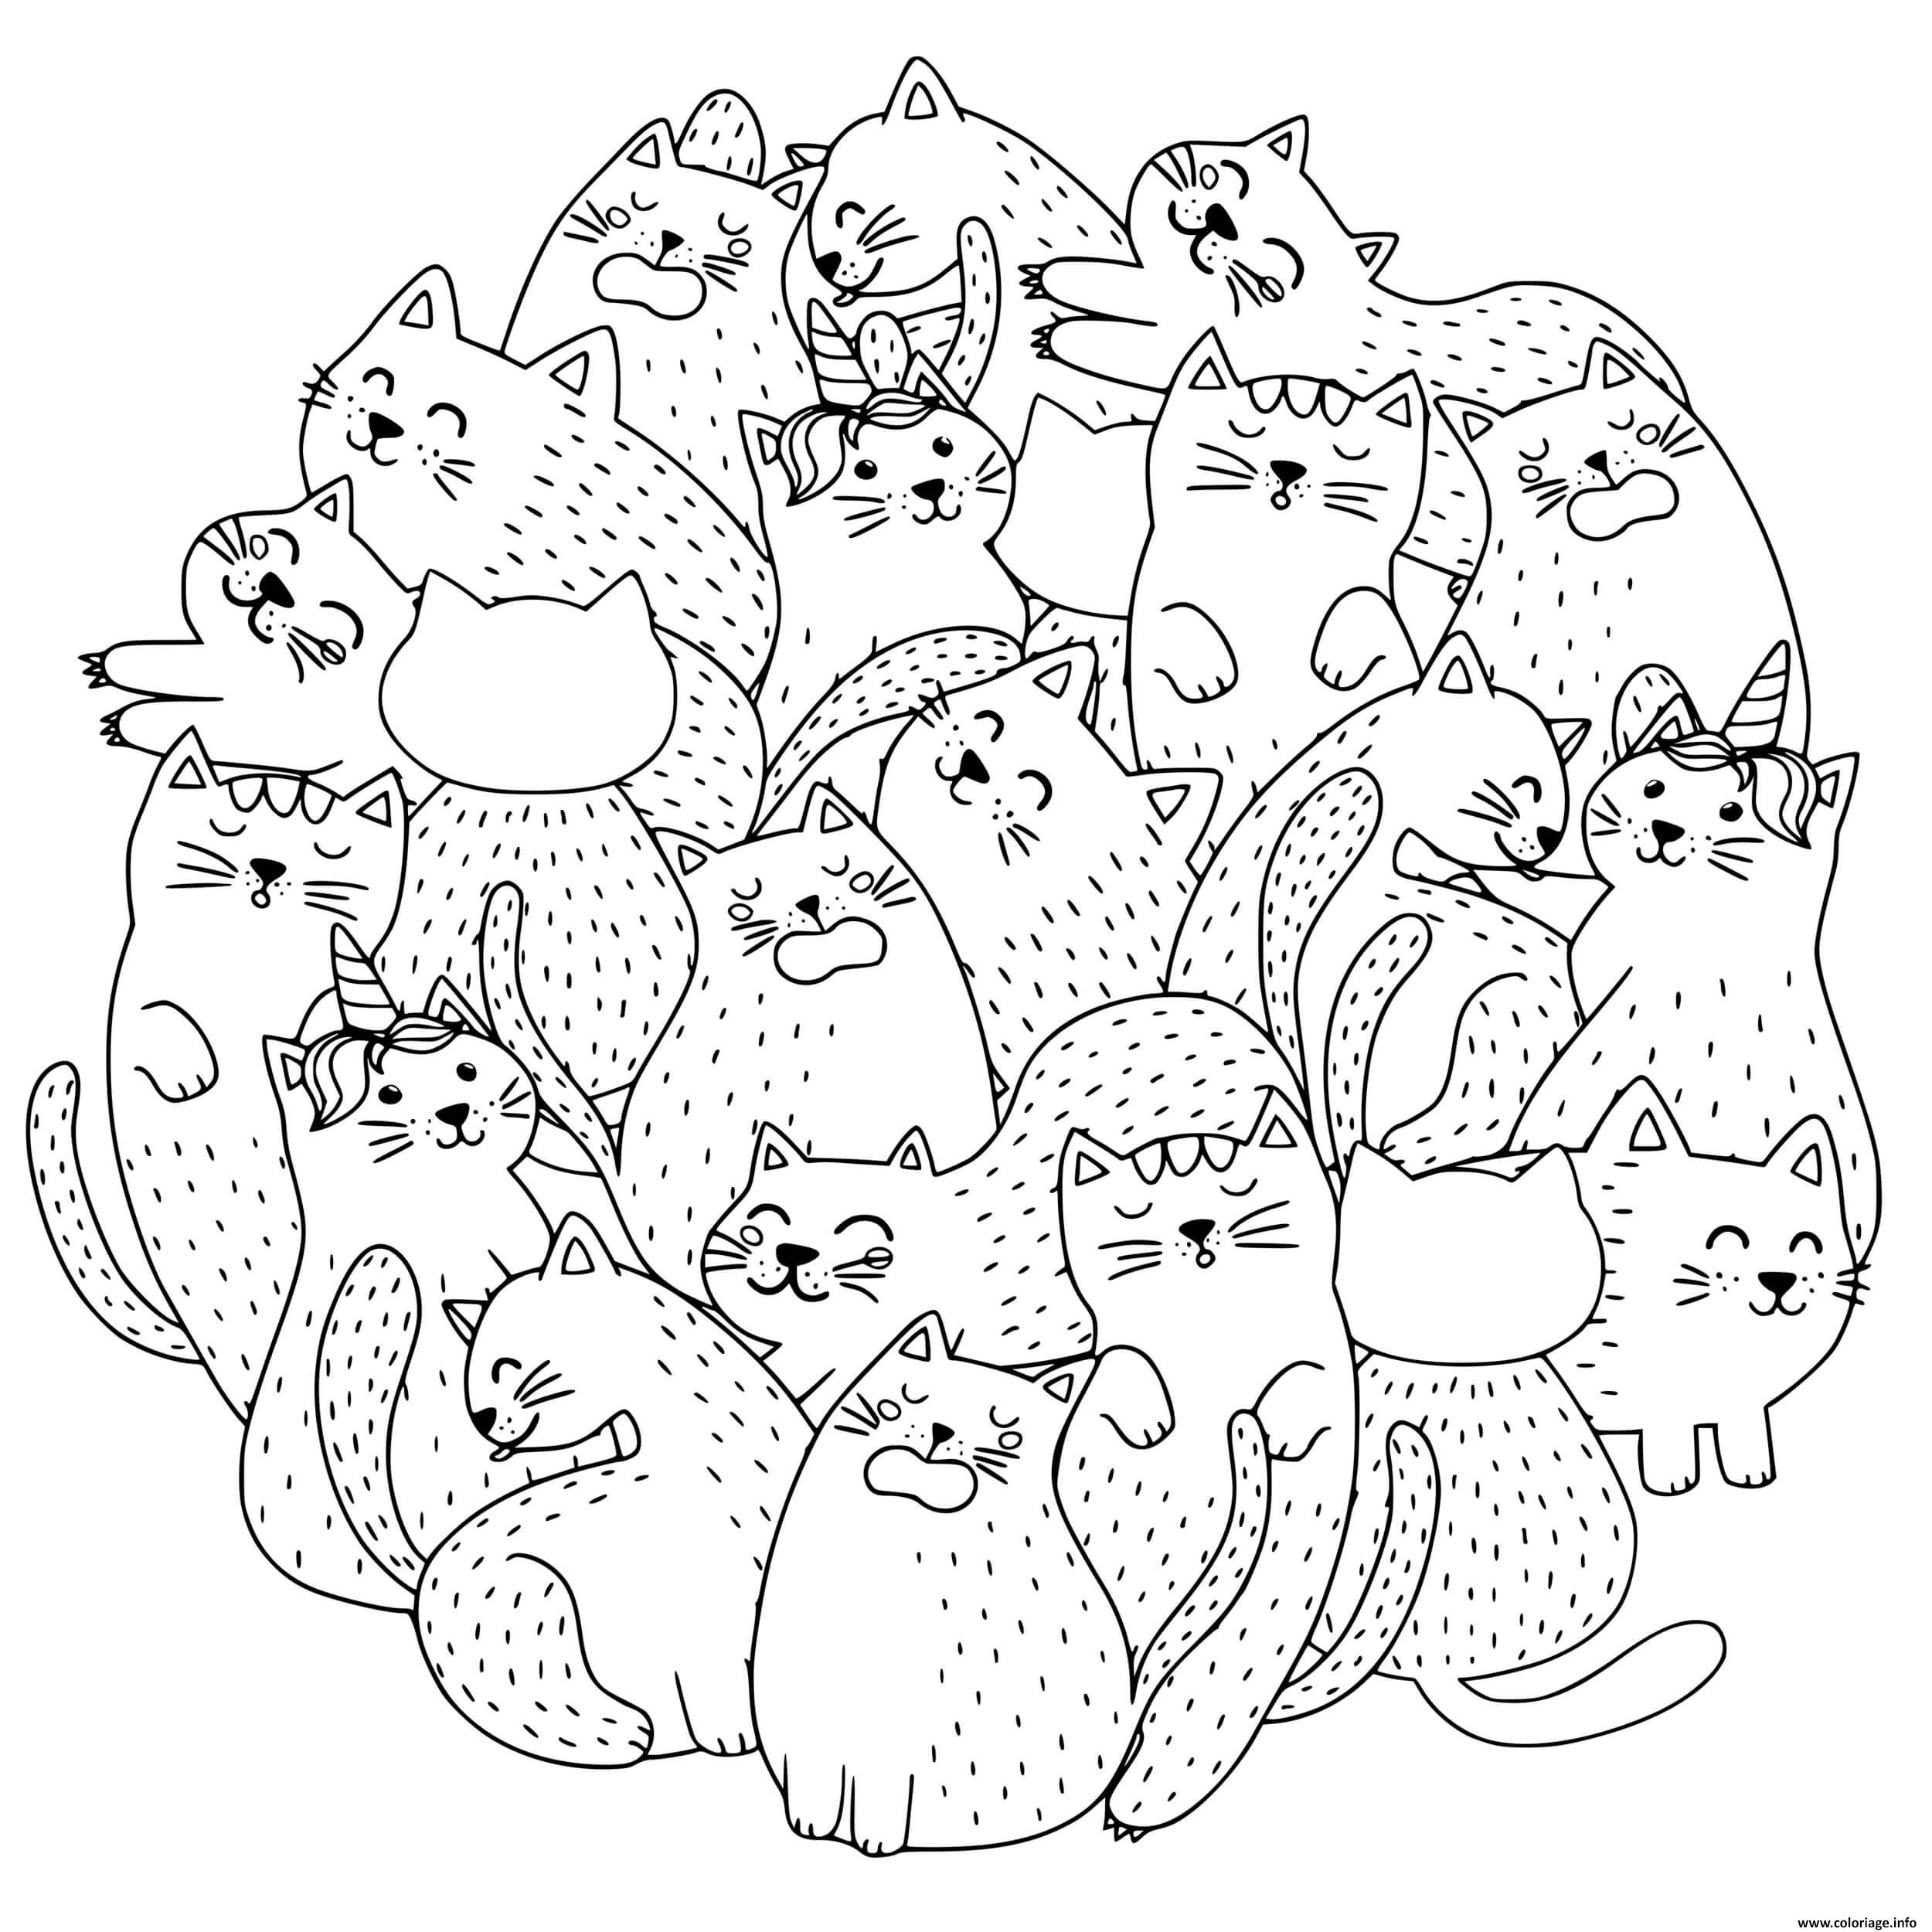 Dessin une grosse boule de chats chatons et licorne adorable Coloriage Gratuit à Imprimer